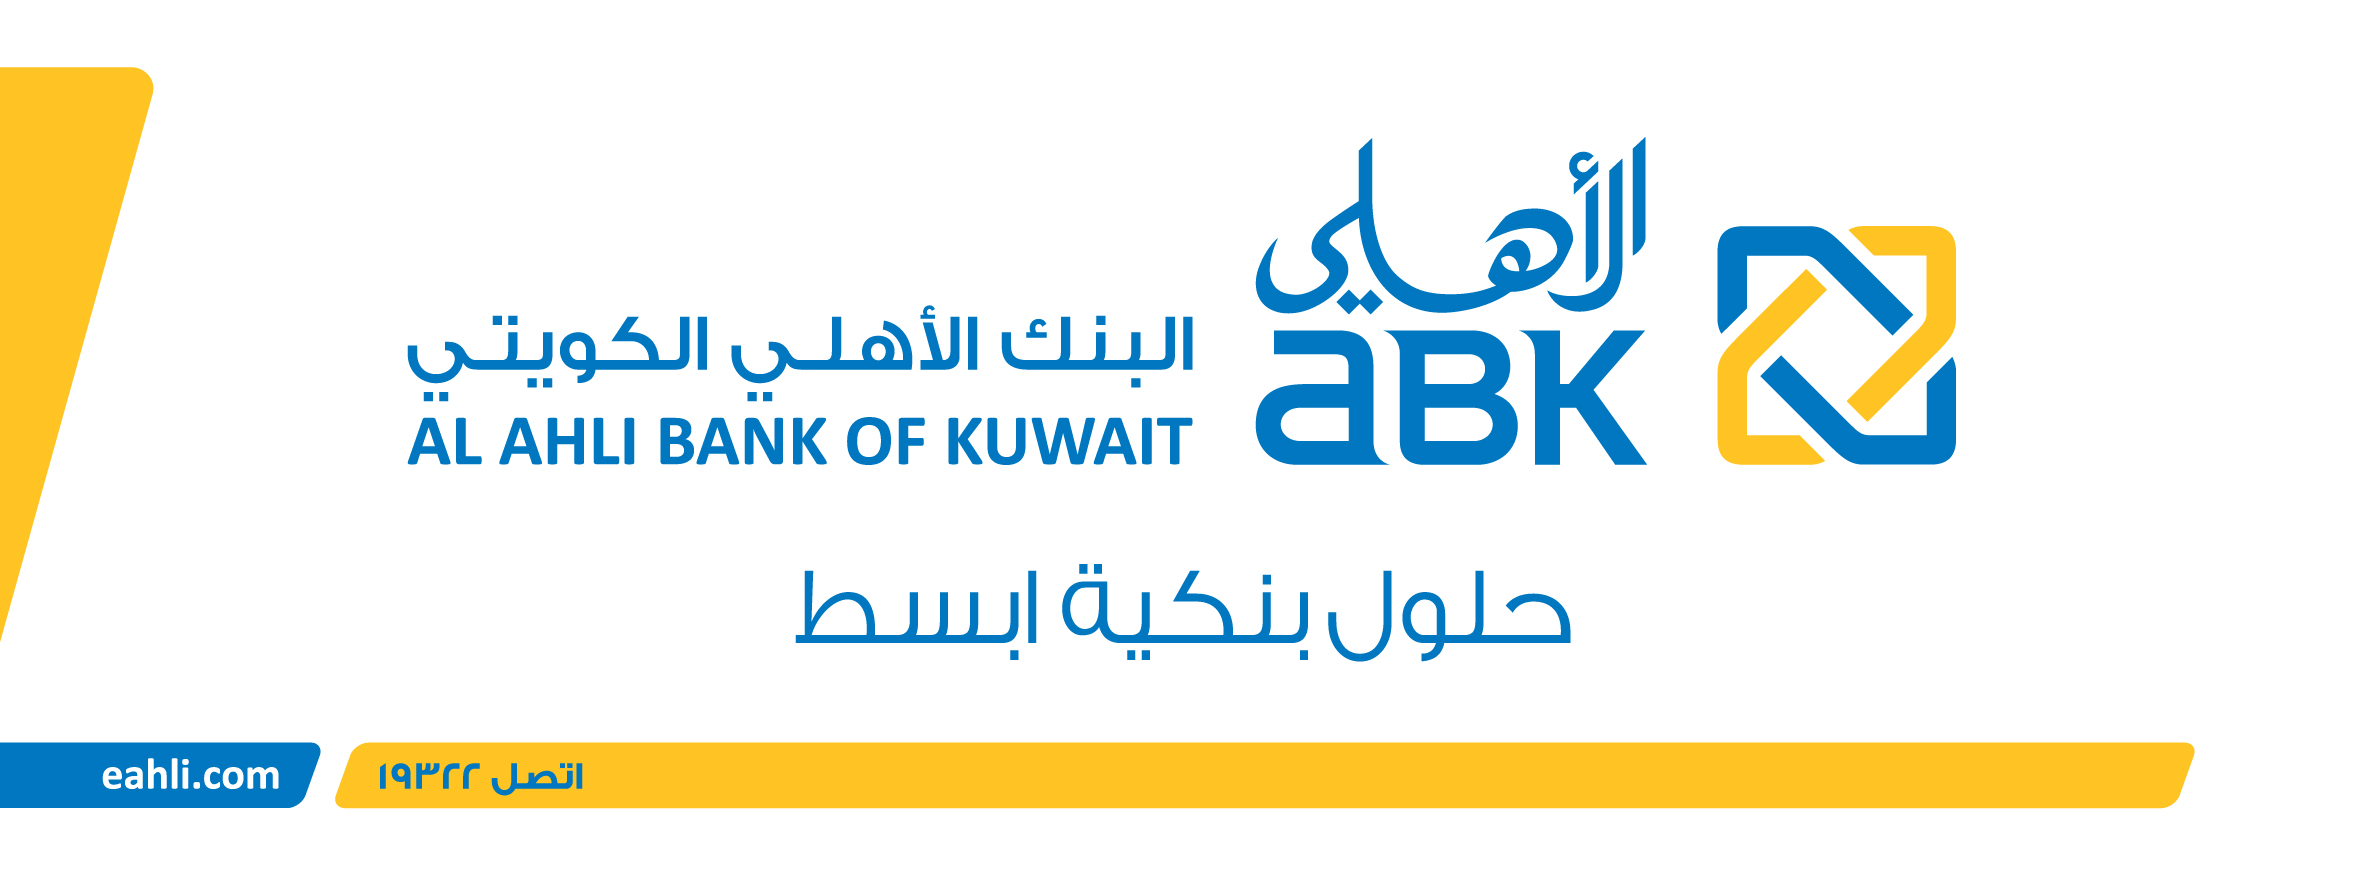 غلاف البنك الاهلى الكويتى ABK